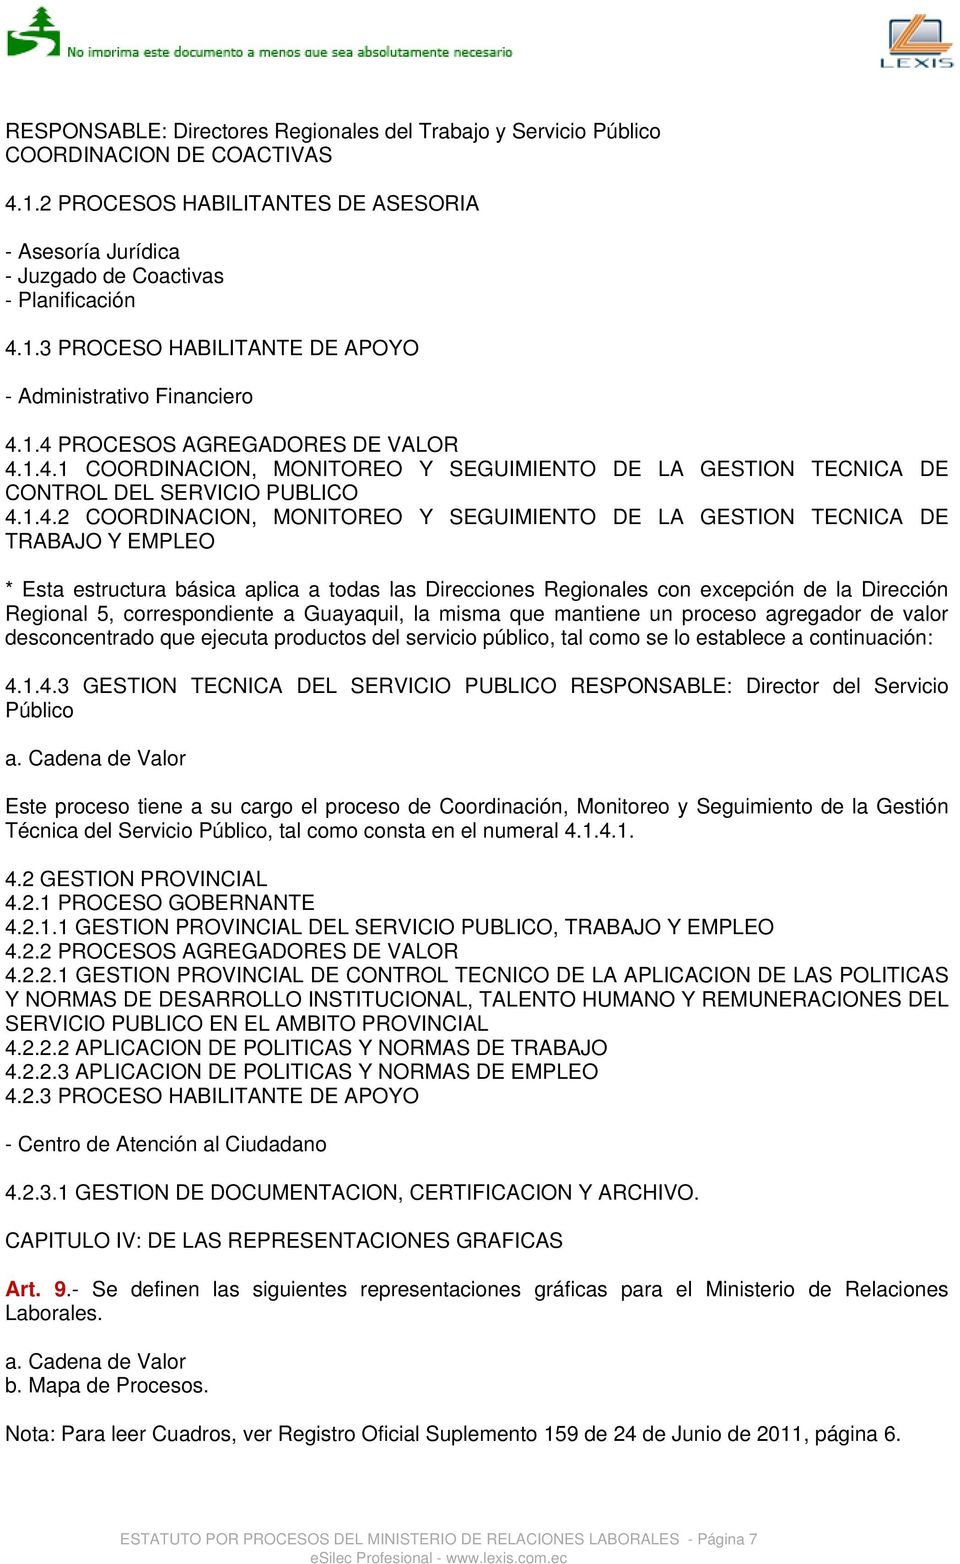 TECNICA DE TRABAJO Y EMPLEO * Esta estructura básica aplica a todas las Direcciones Regionales con excepción de la Dirección Regional 5, correspondiente a Guayaquil, la misma que mantiene un proceso